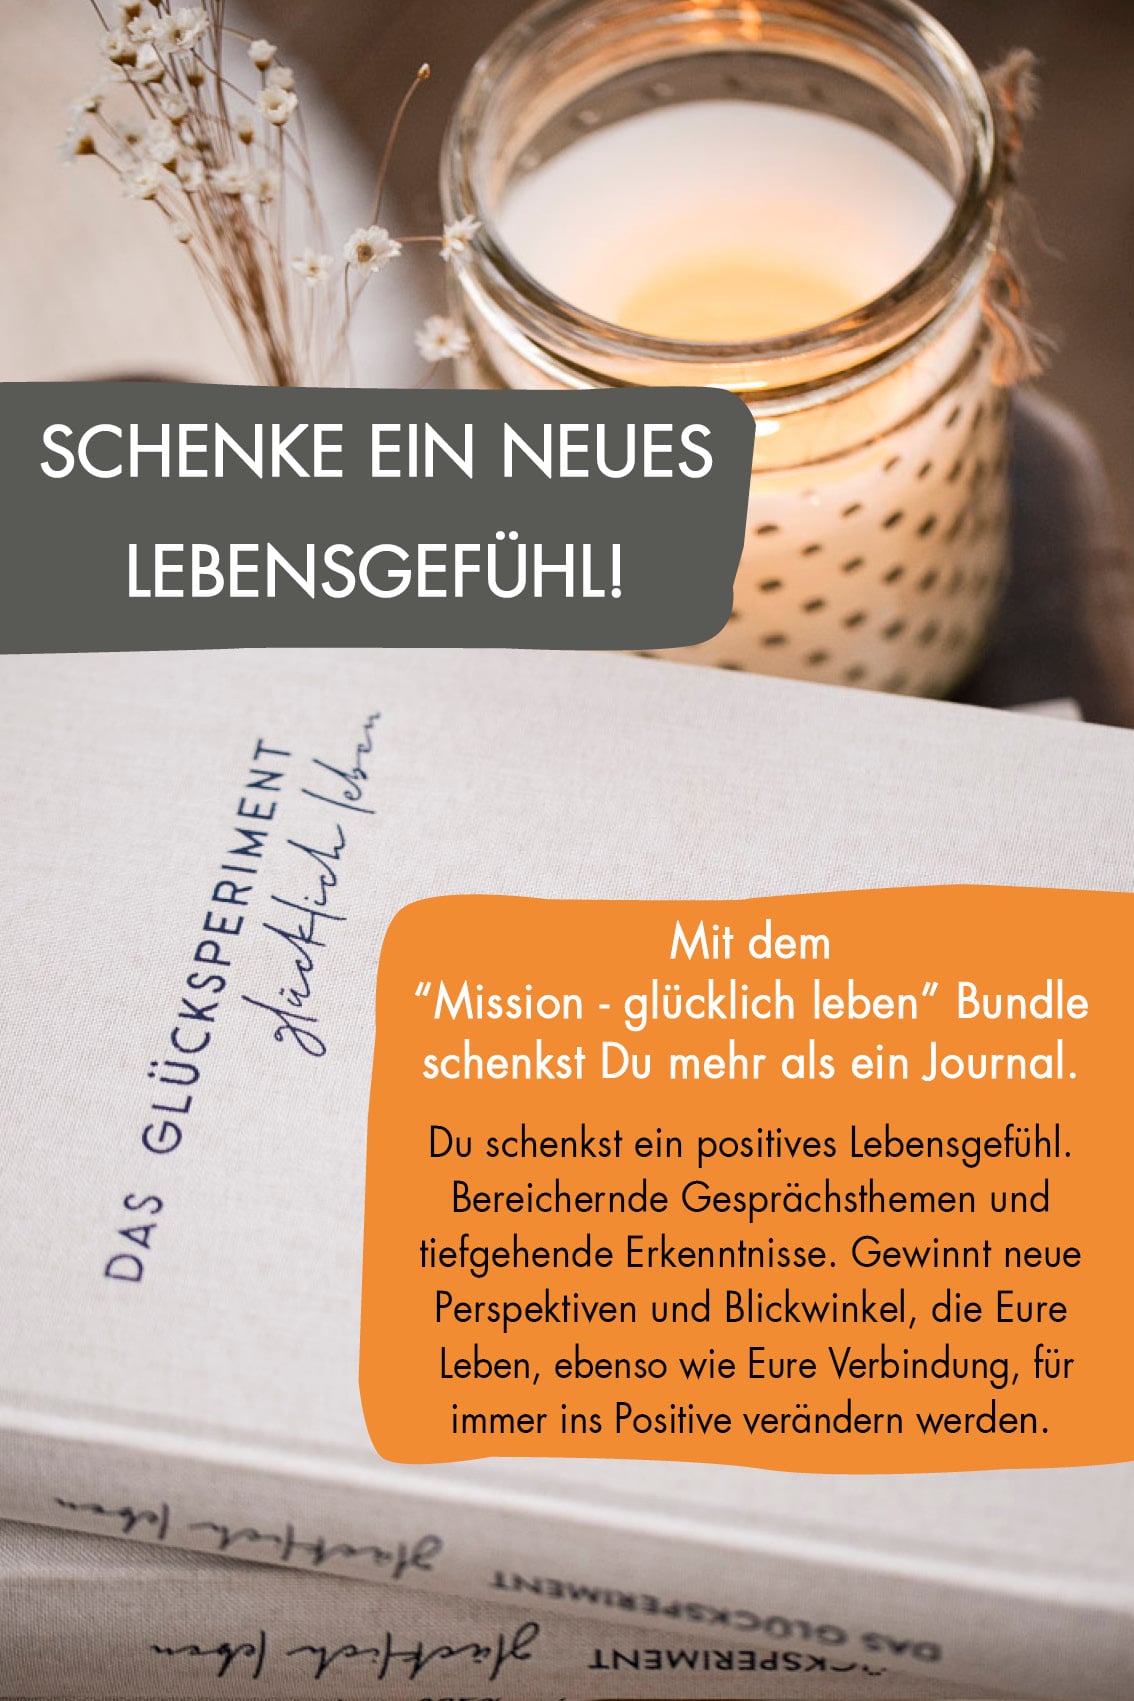 Artikelbilder_mission_gluecklich_leben5